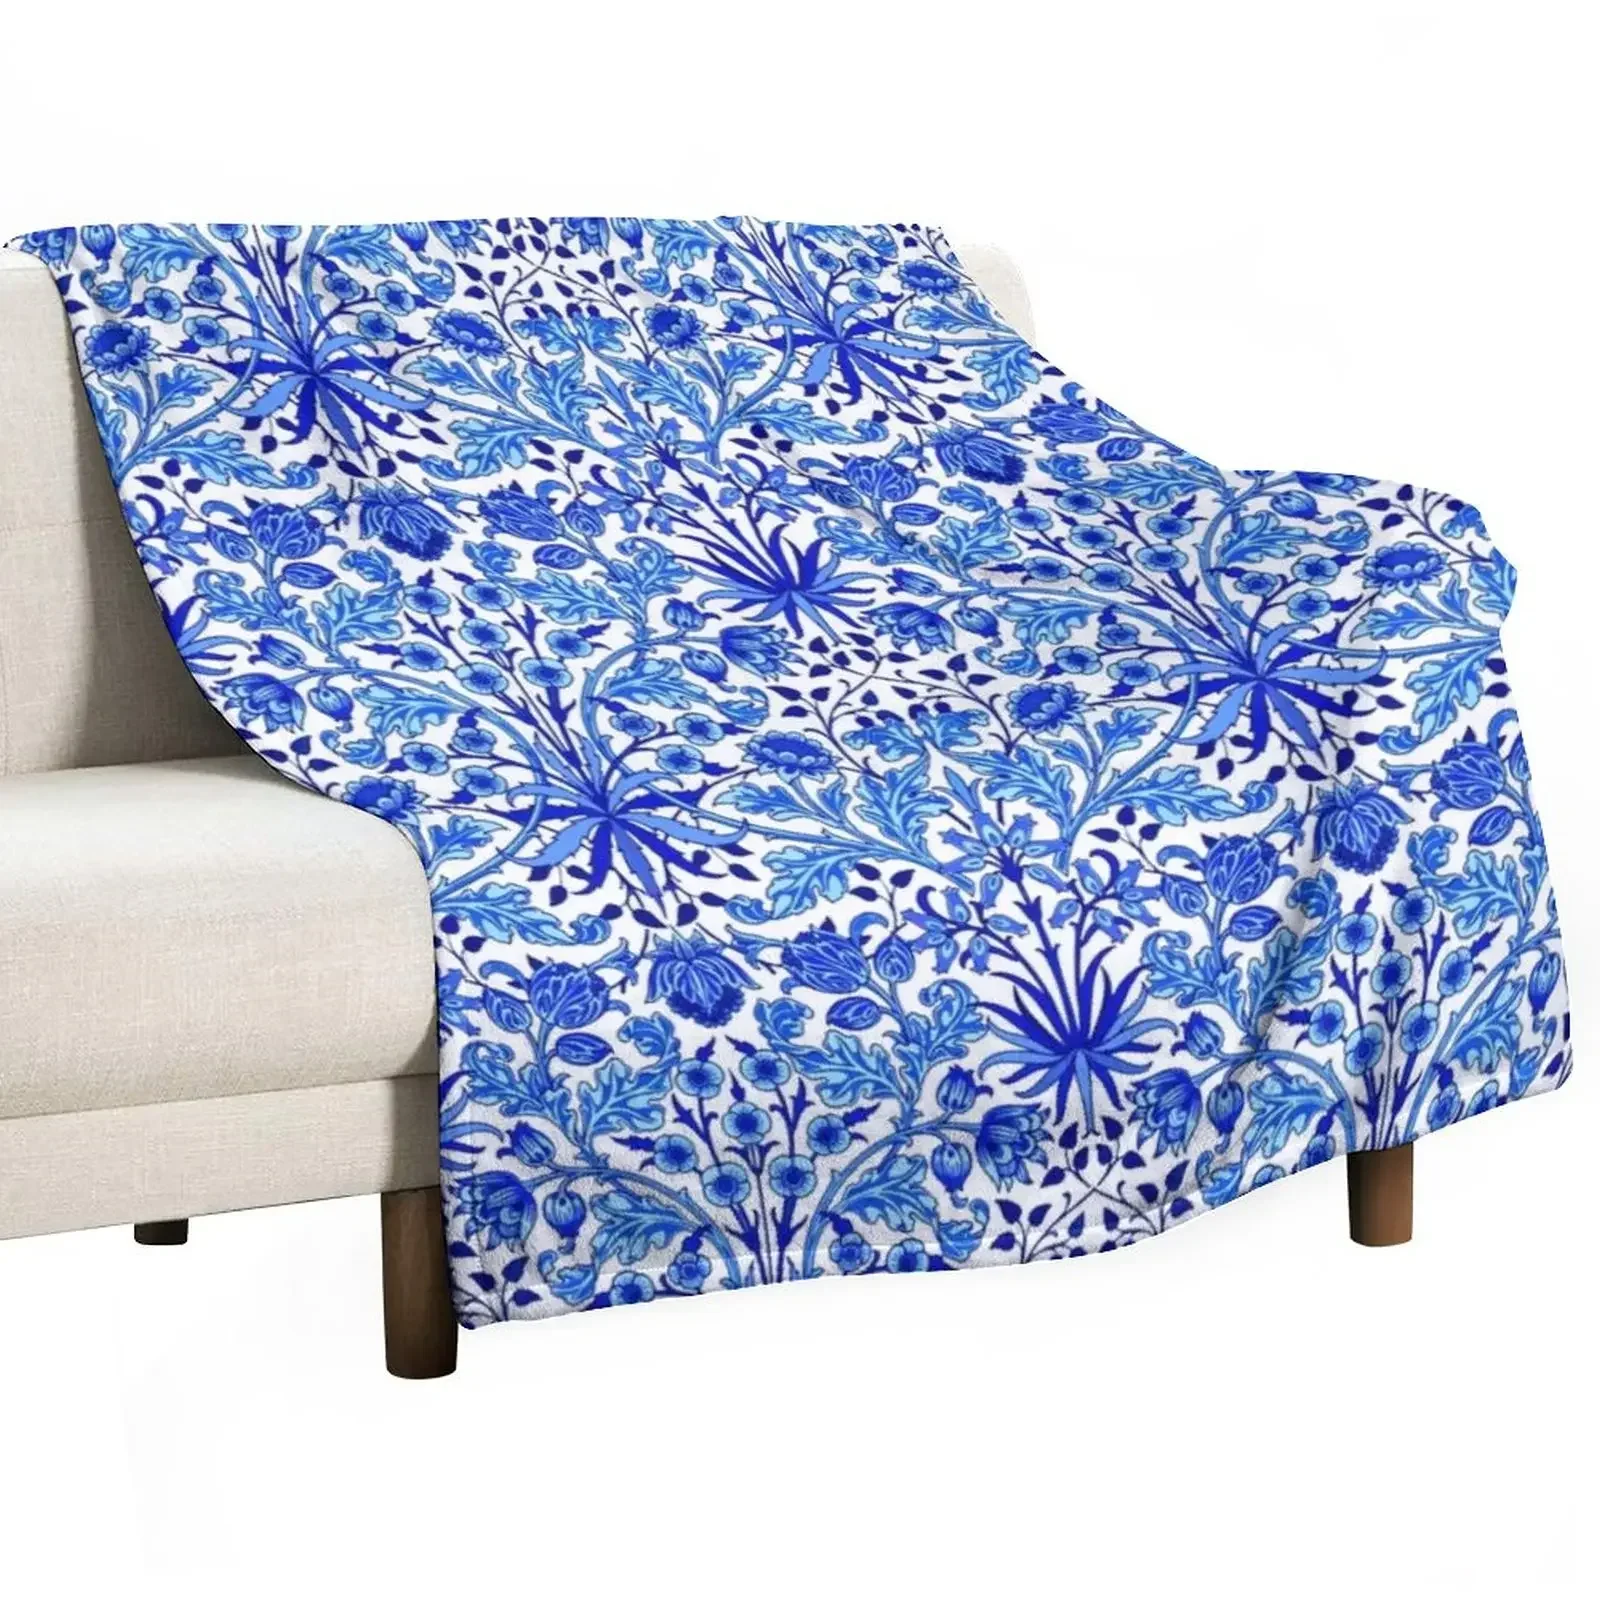 

Гиацинтовый принт Вильяма Морриса, кобальтовое сине-белое одеяло, тонкие пушистые мягкие пушистые одеяла